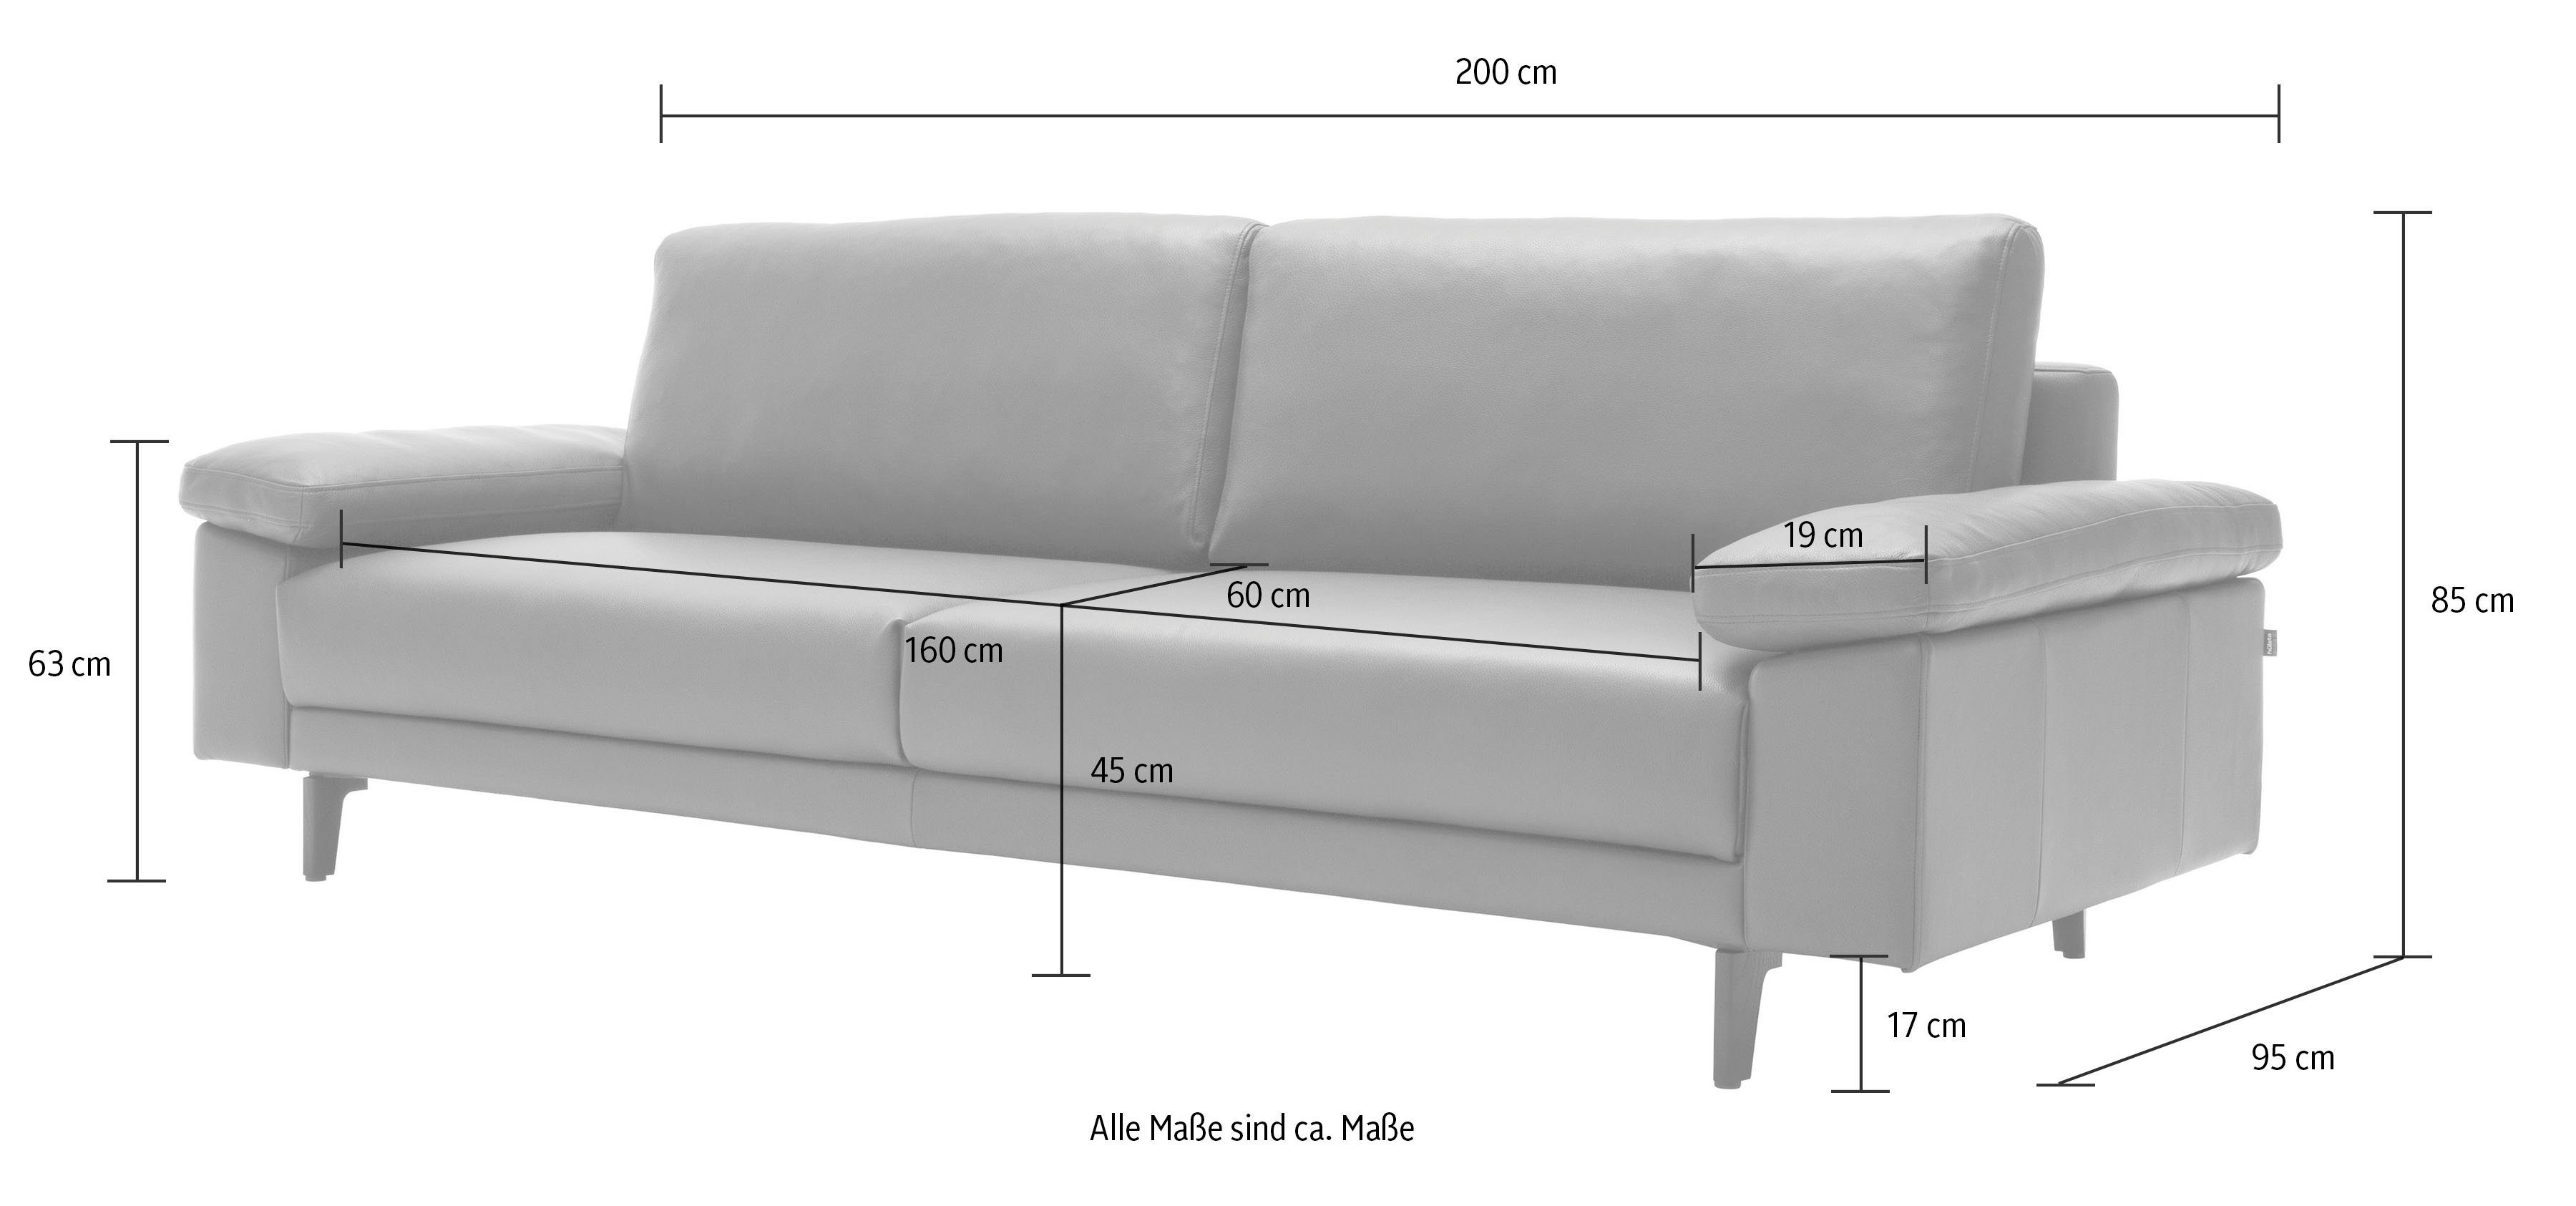 2,5-Sitzer sofa hs.450 hülsta